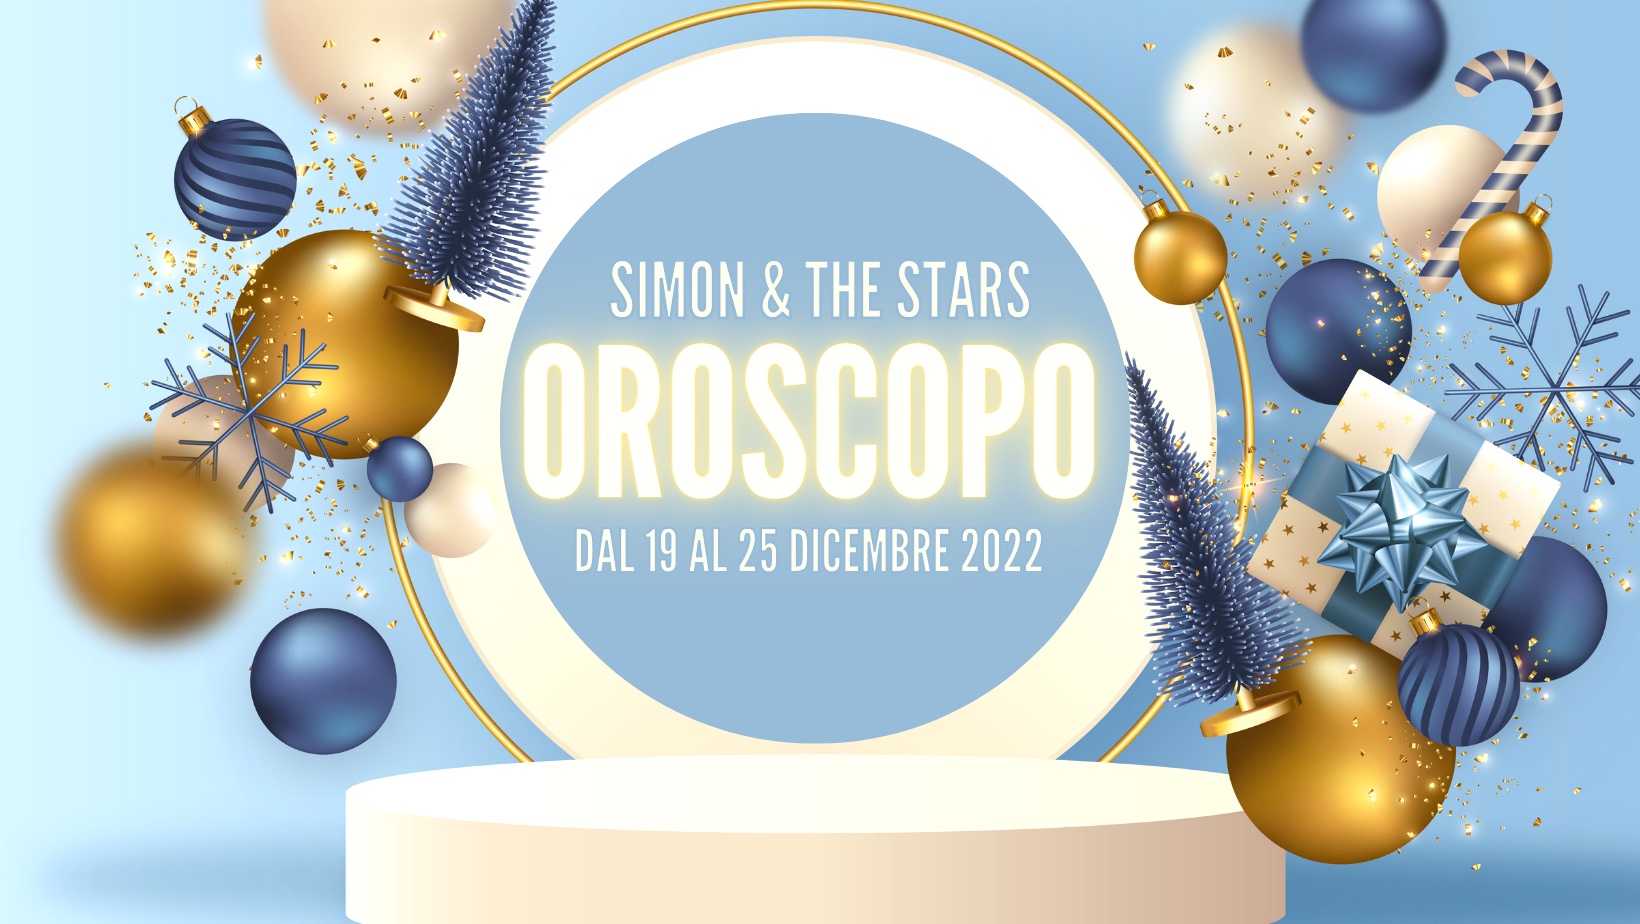 Horóscopos del 19 al 25 de diciembre de 2022